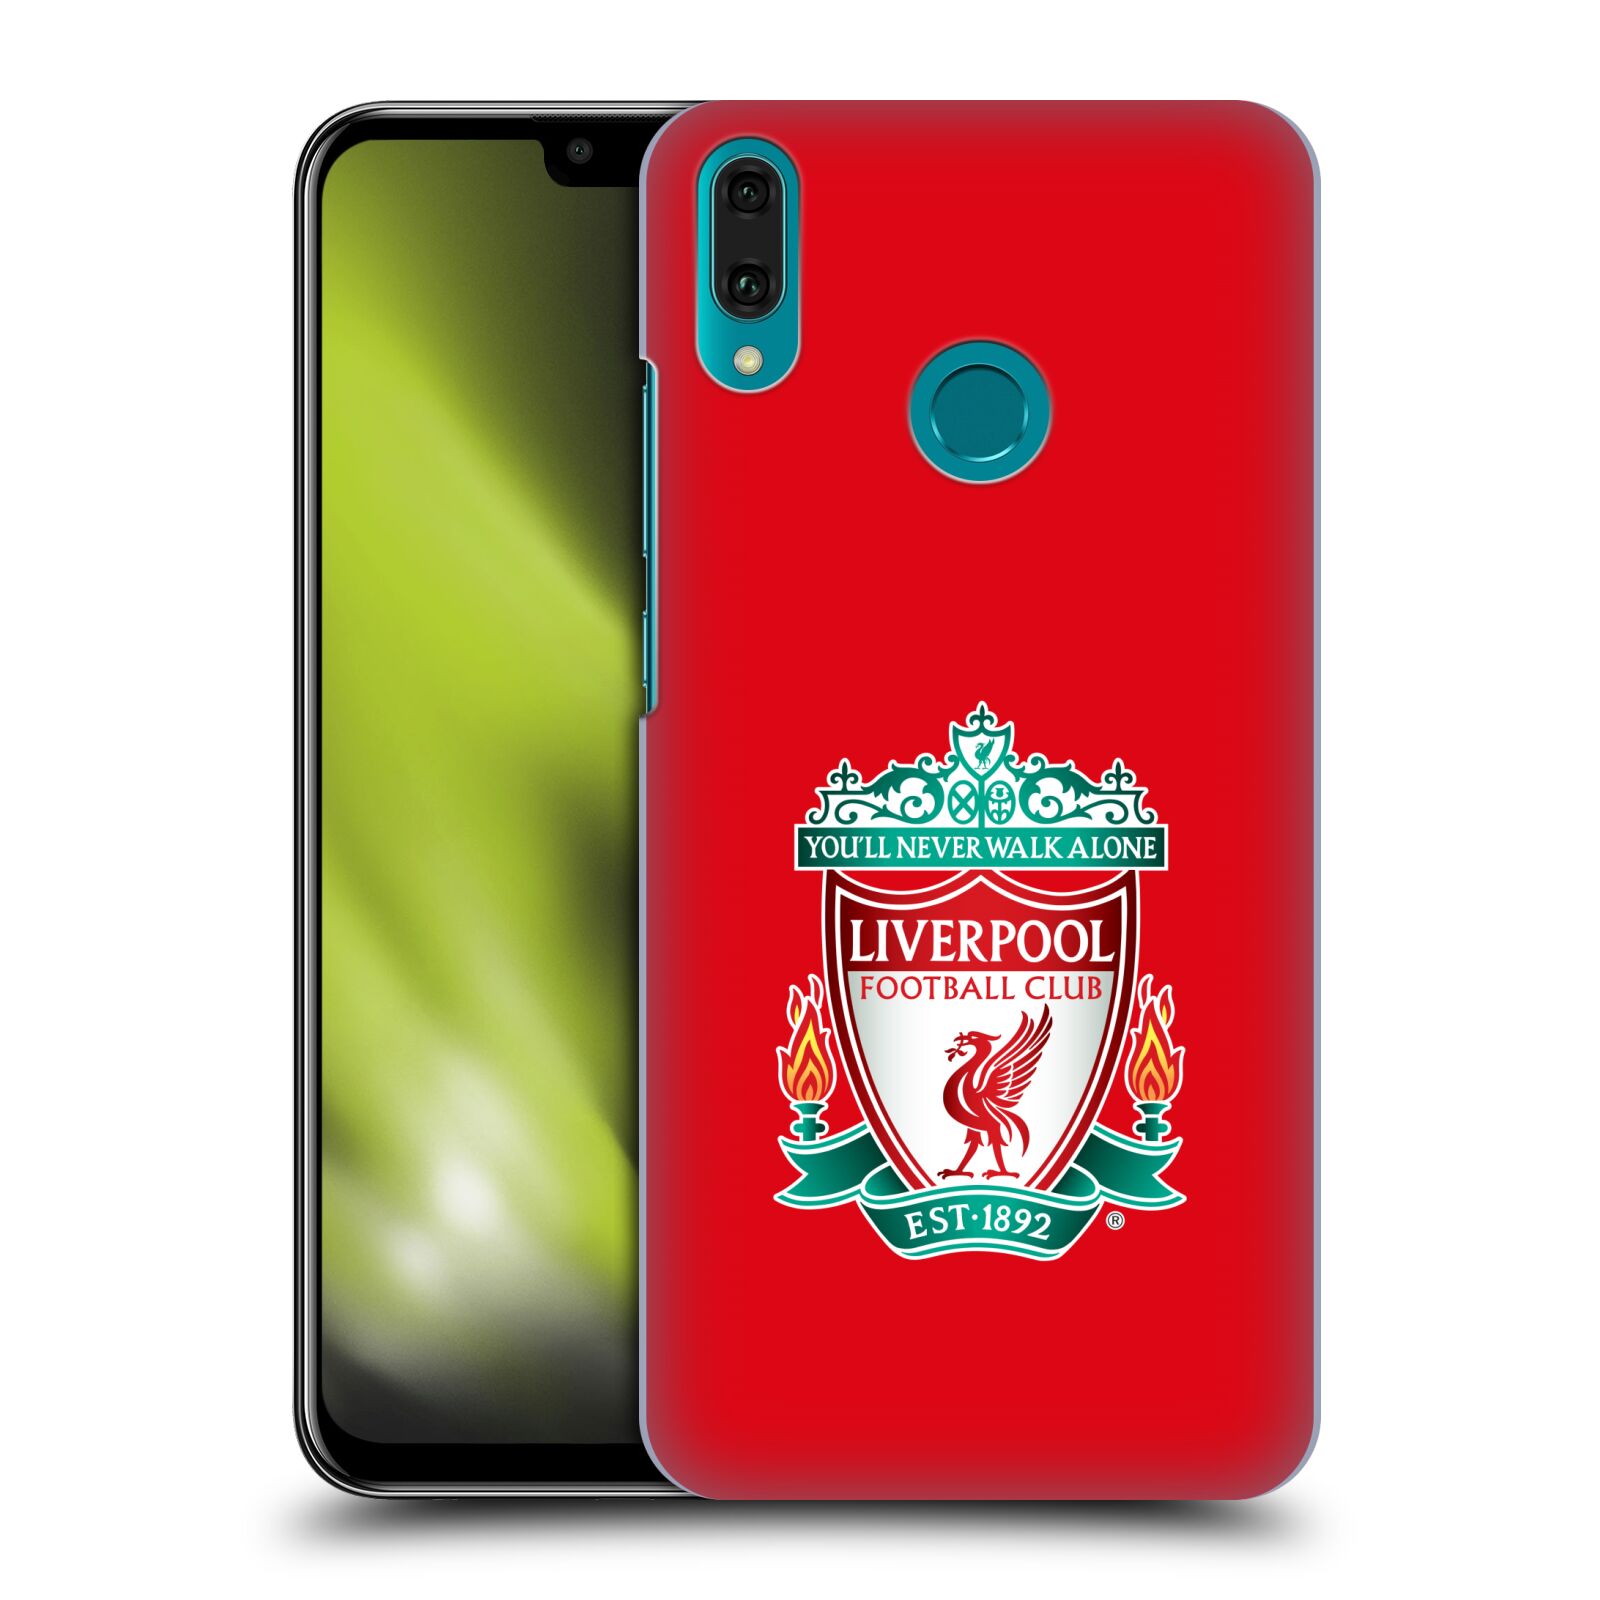 Pouzdro na mobil Huawei Y9 2019 - HEAD CASE - Fotbalový klub Liverpool barevný znak červené pozadí